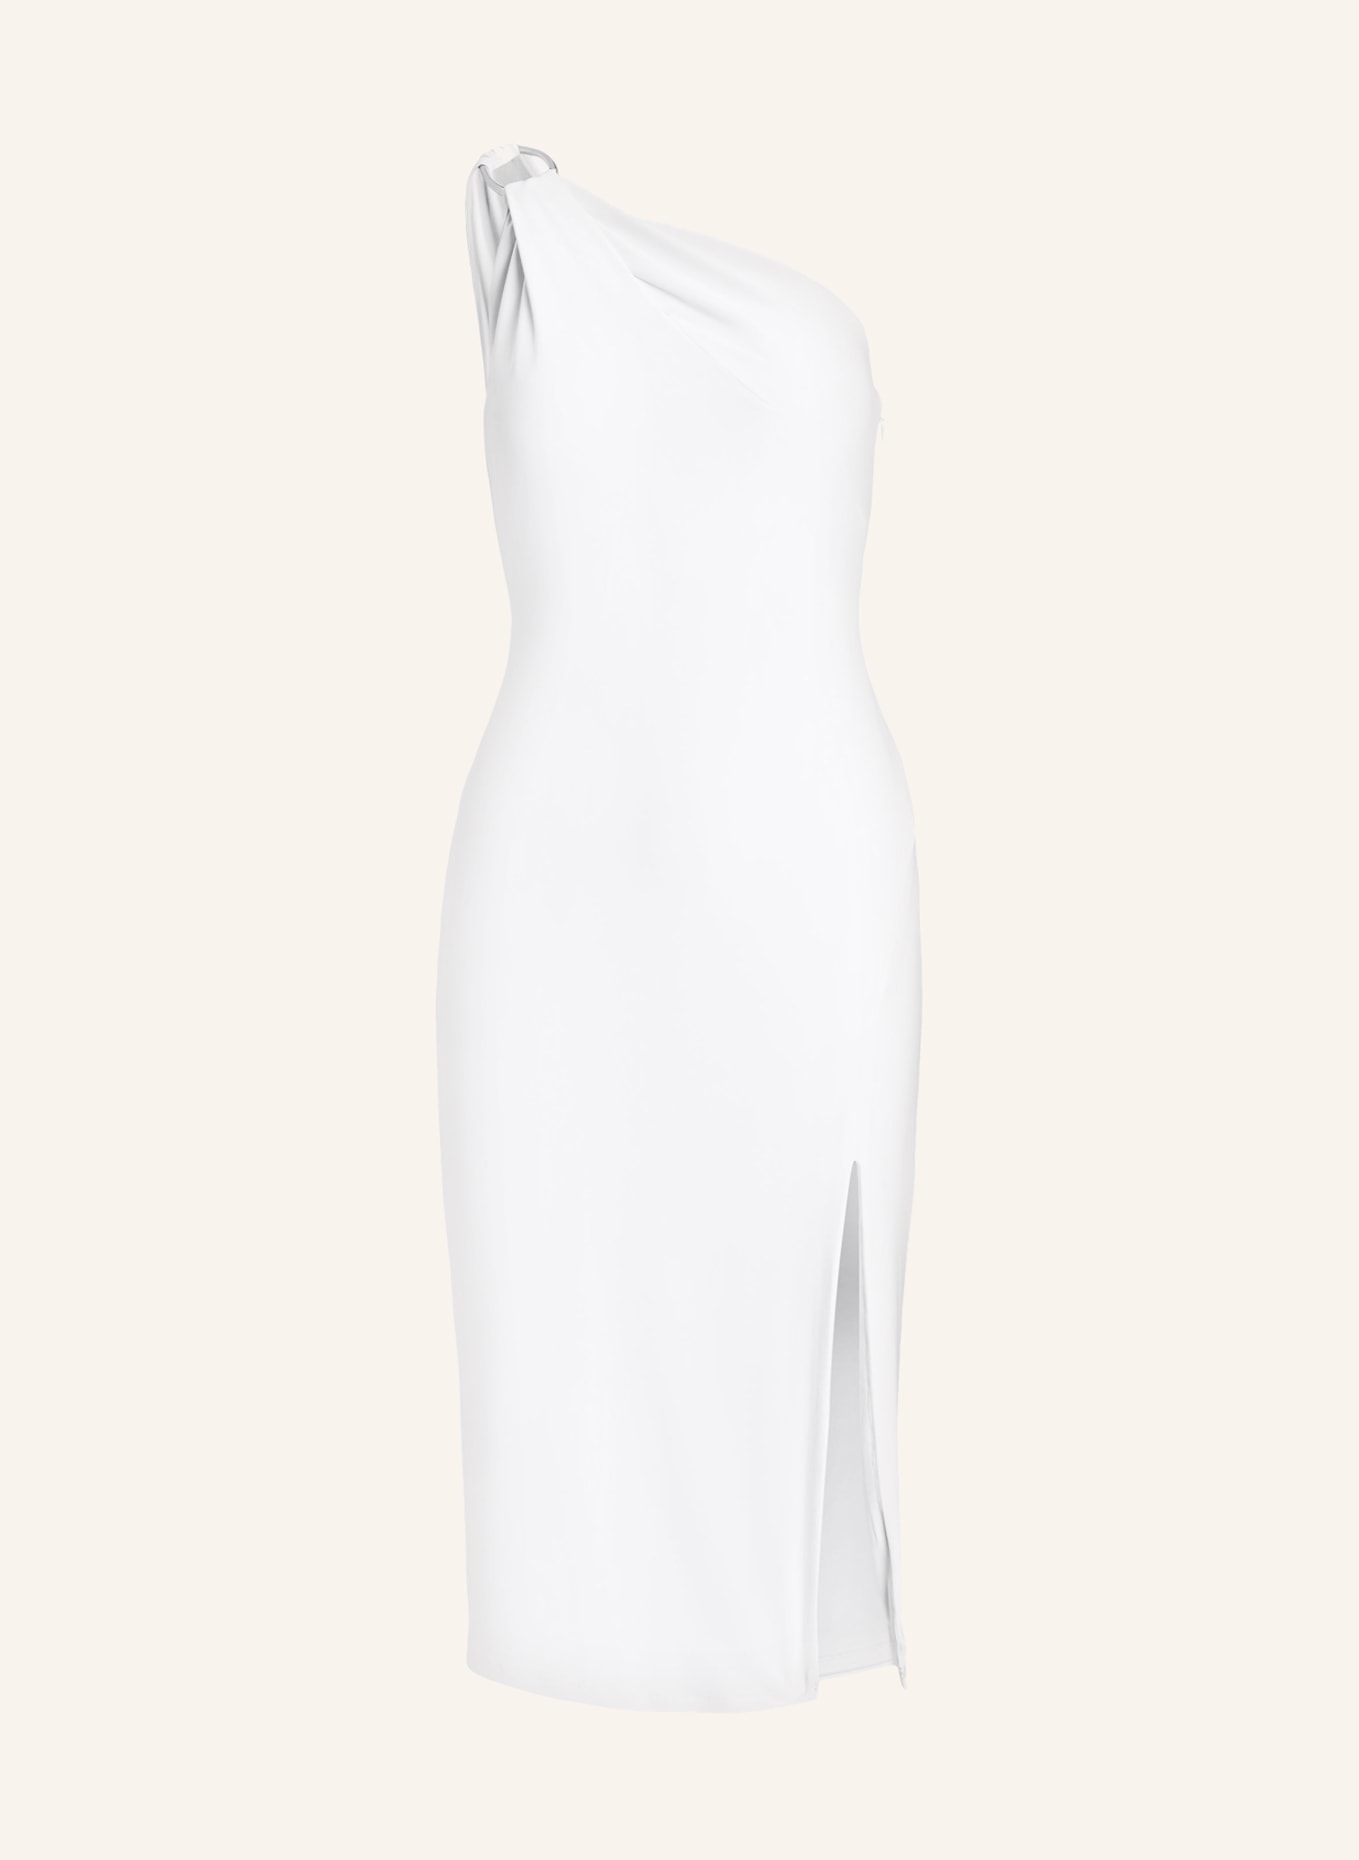 LAUREN RALPH LAUREN One-Shoulder-Kleid aus Jersey mit Cut-out, Farbe: WEISS (Bild 1)